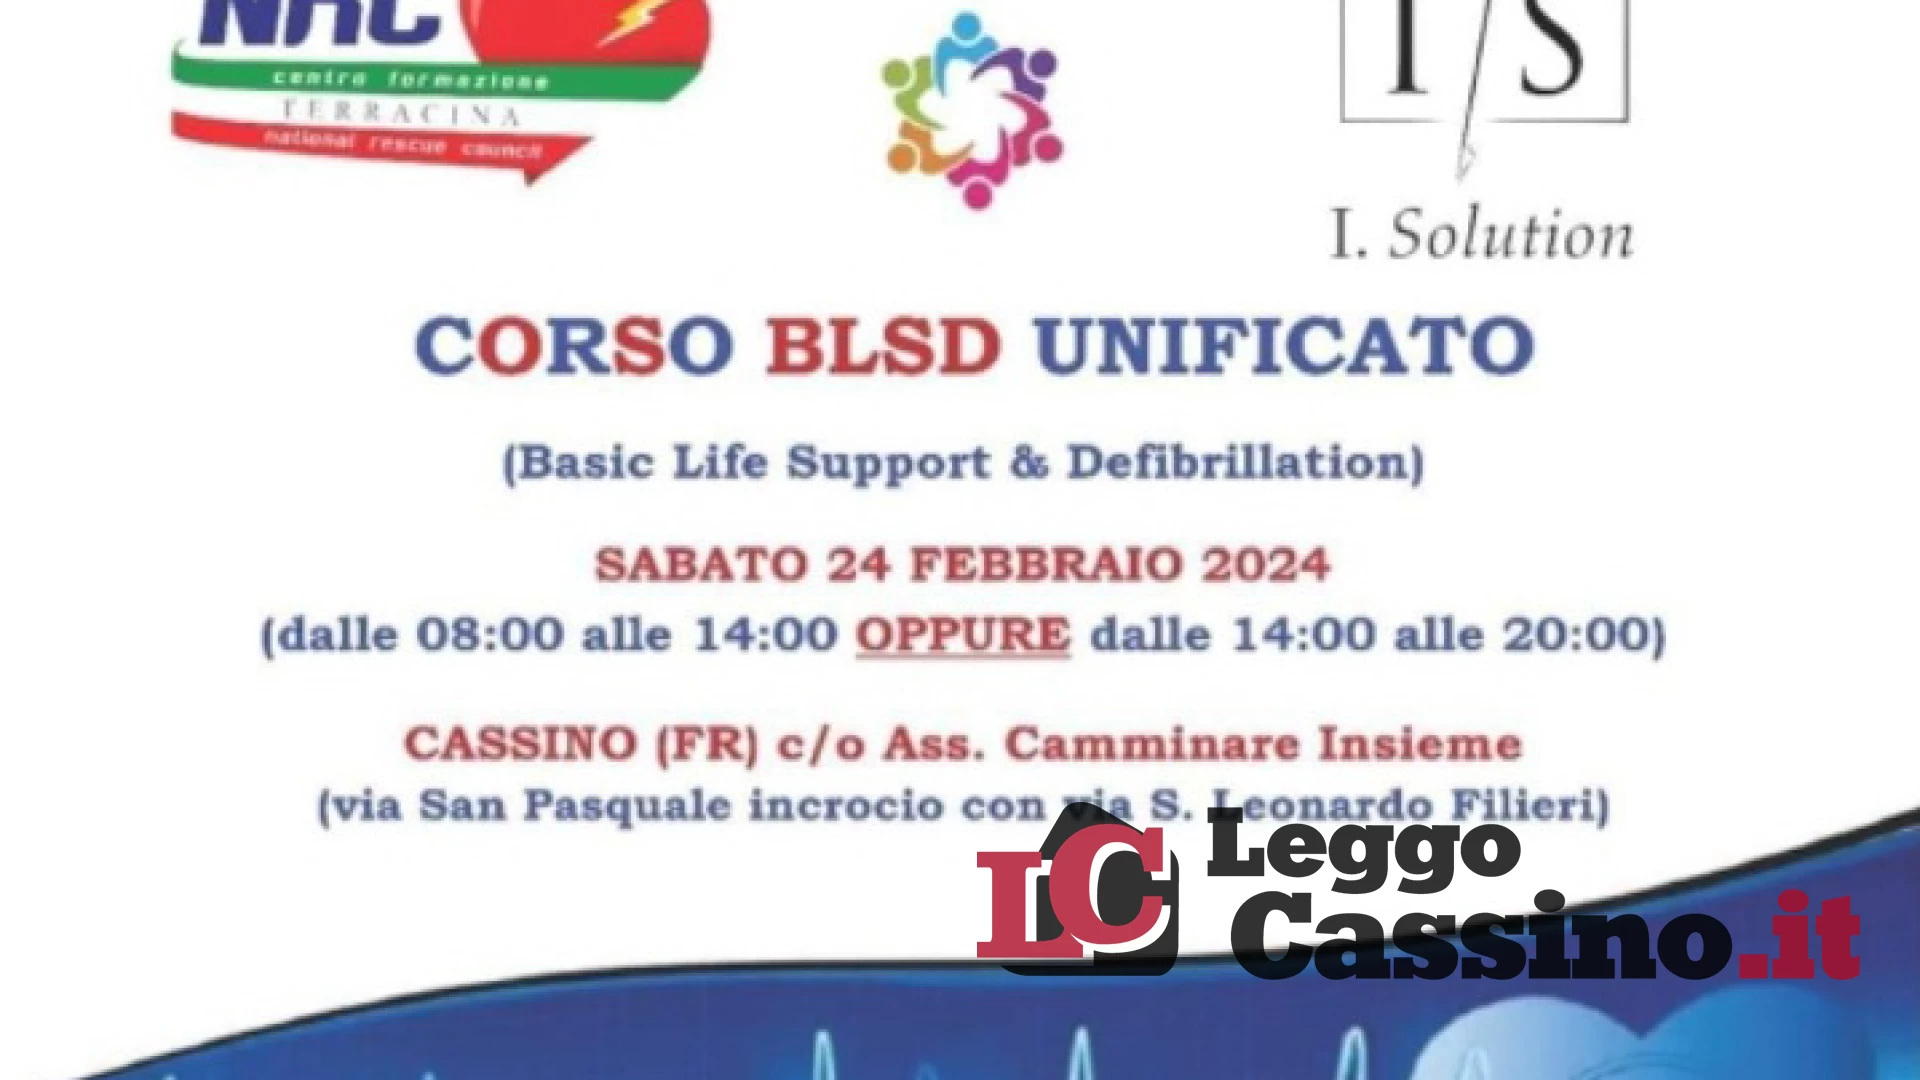 Corso BLSD Unificato sabato 24 febbraio a Cassino